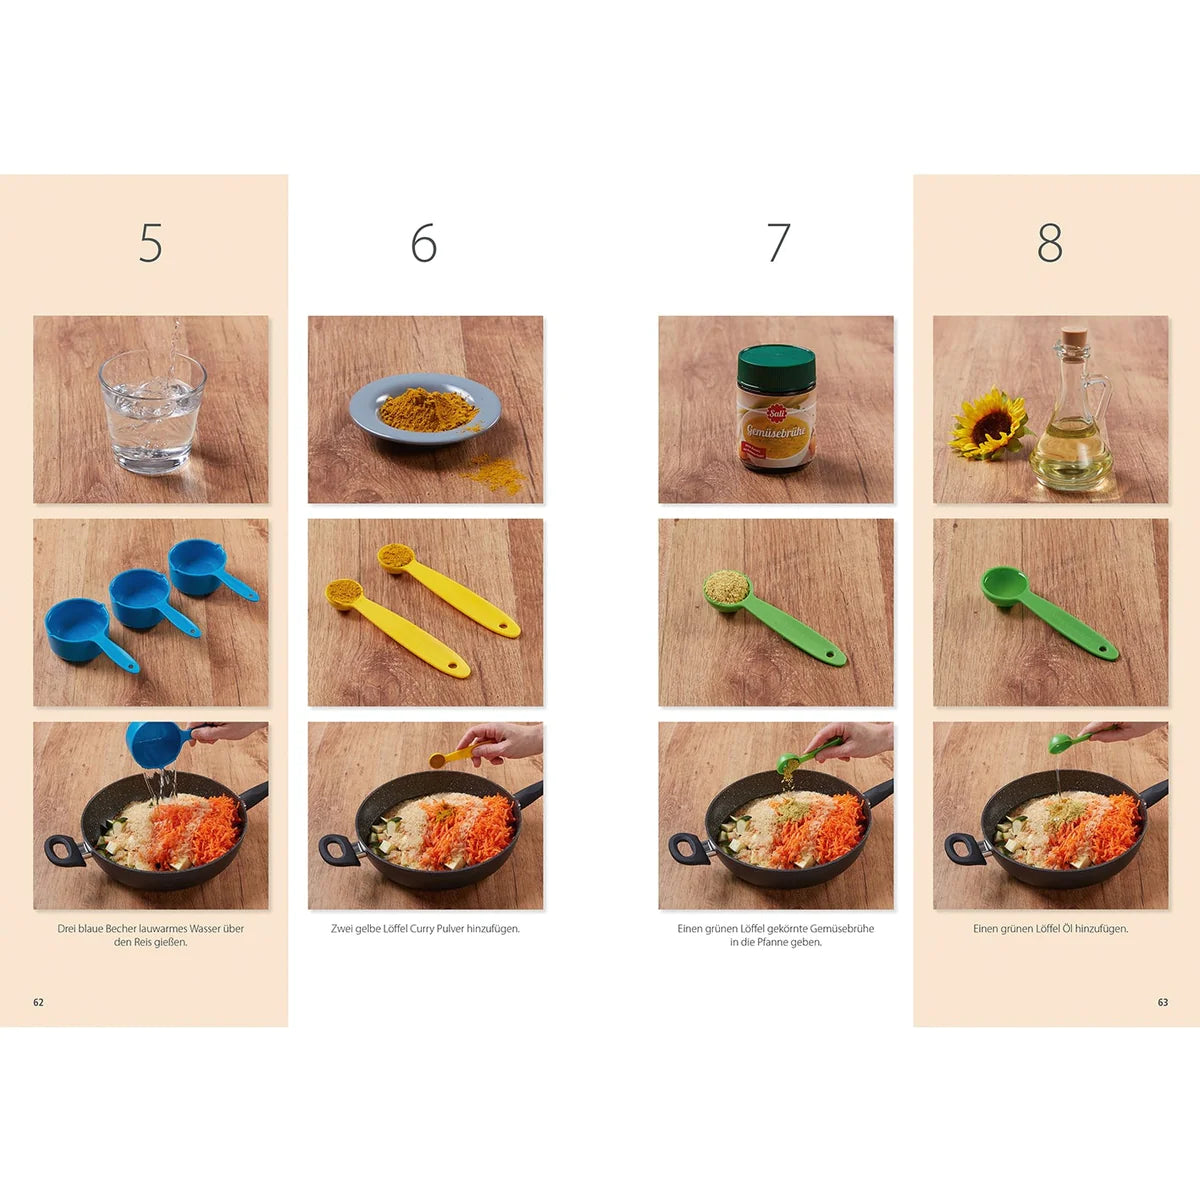 Band 7 "Vegetarisch" Familien-Kochbuch inkl. 5-teiliges Messbecher-Set (lose gepackt) | Kinderleichte Becherküche